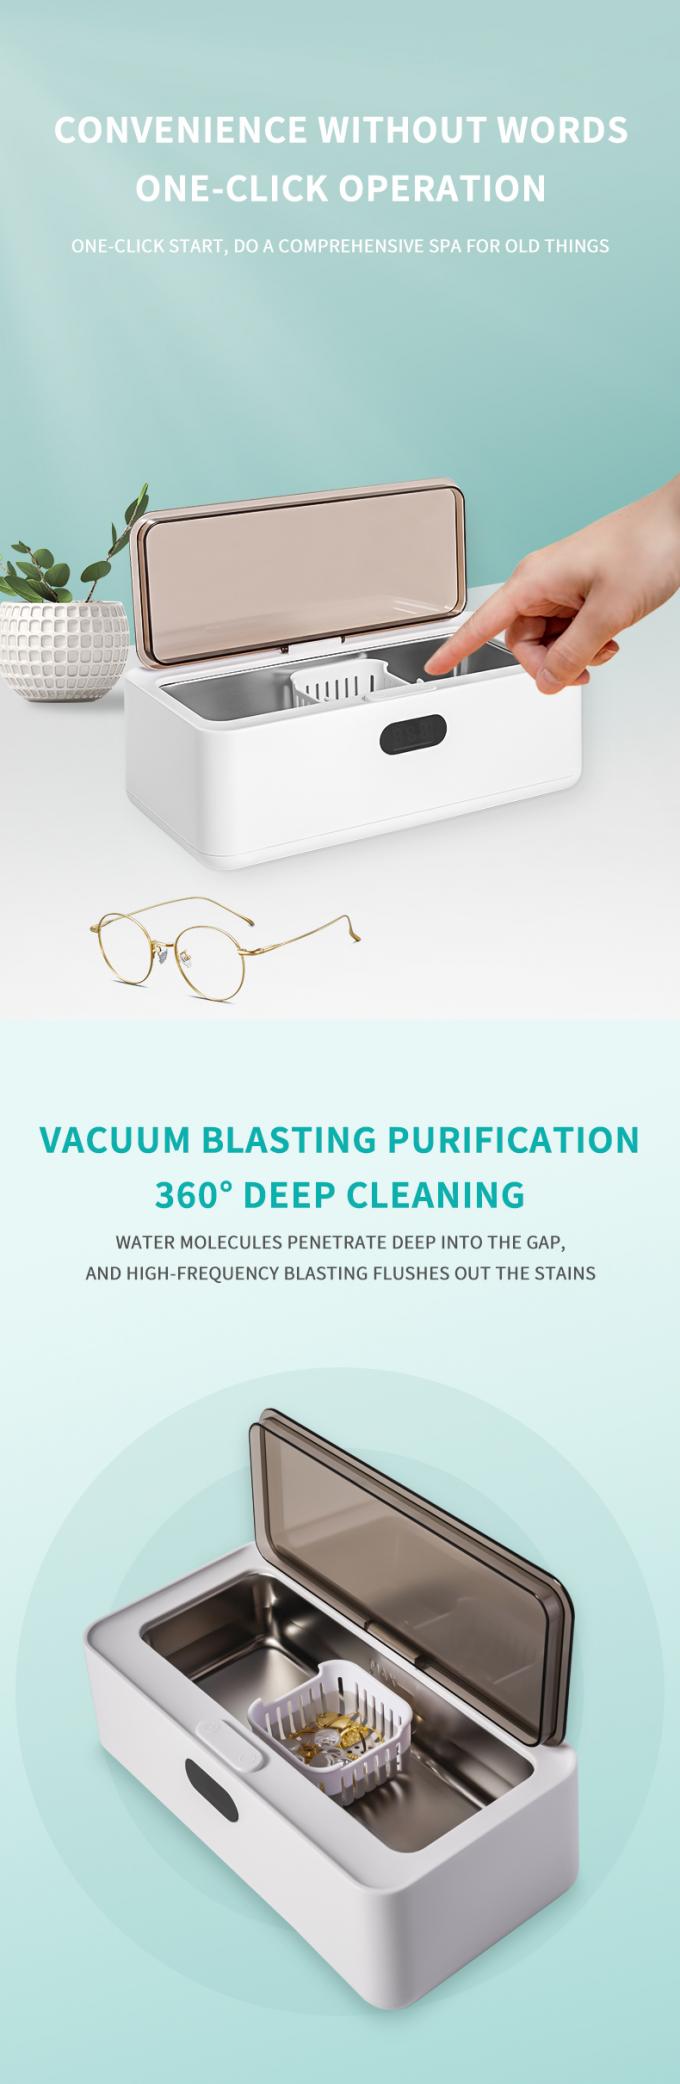 Μίνι υπερηχητικό πλυντήριο ρούχων 450ml φορητό υπερηχητικό καθαριστή γυαλιών 1